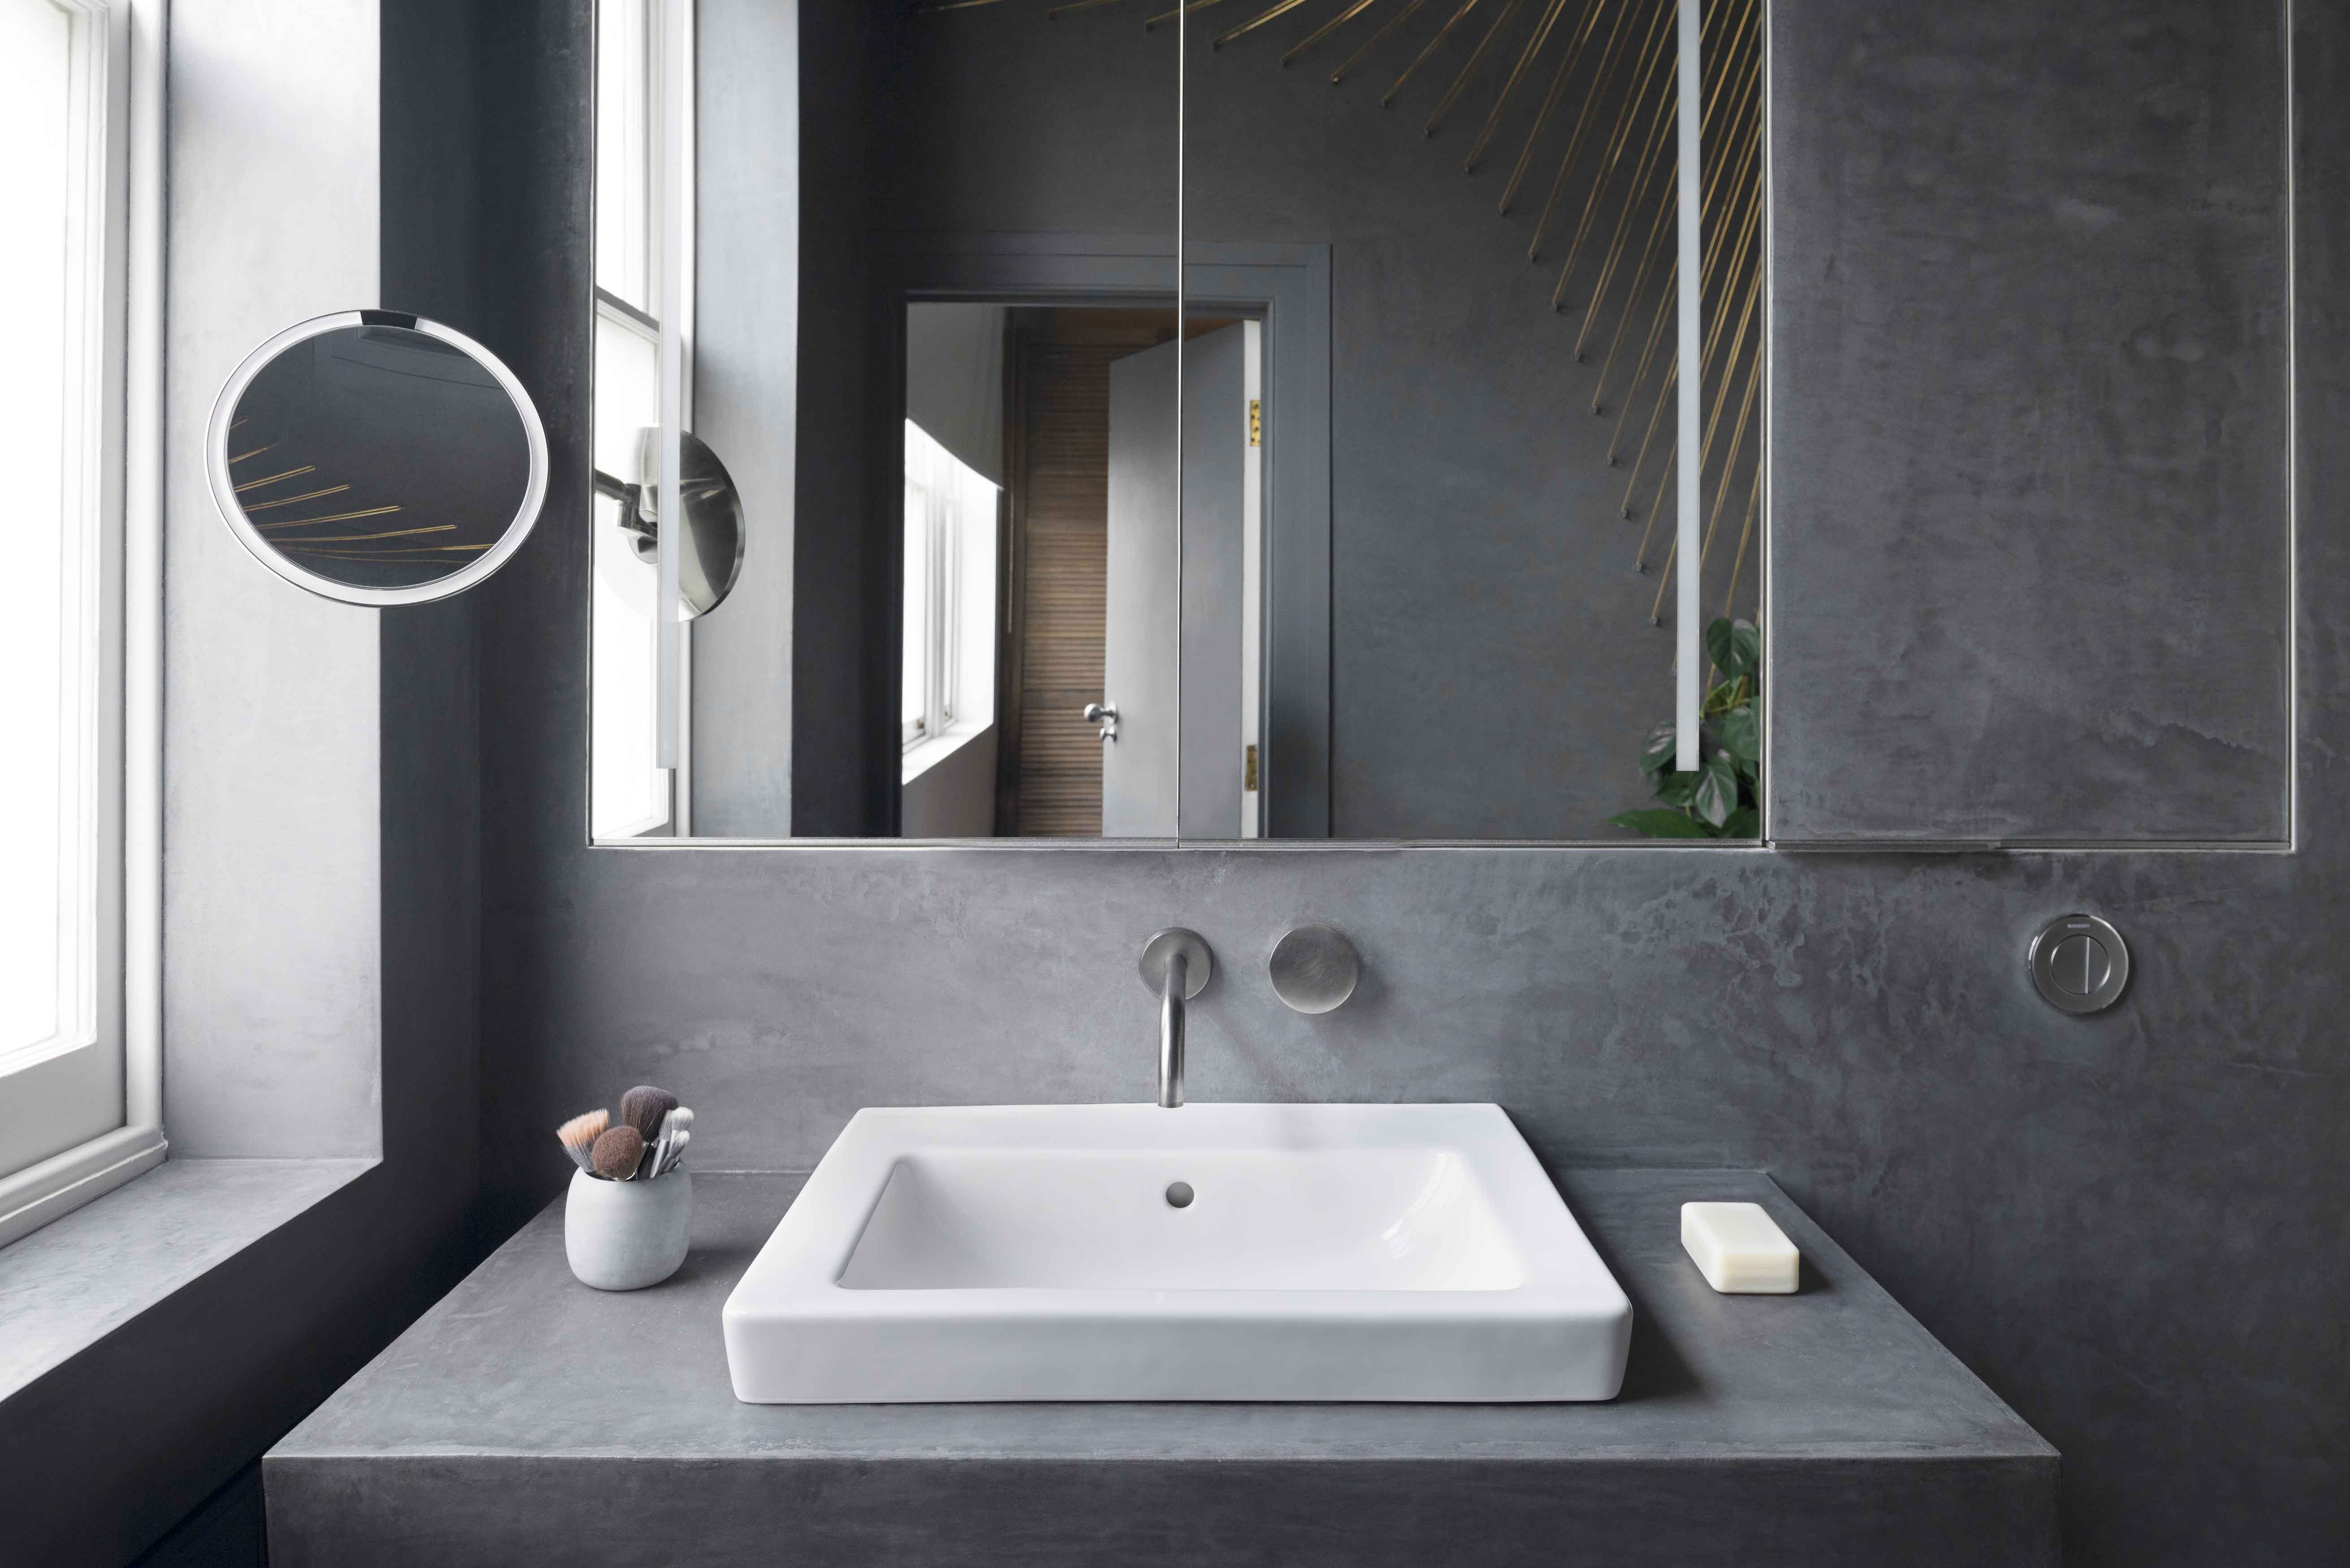 Interior design of outdoor inspired indoor bathroom by Bilska de Beaupuy